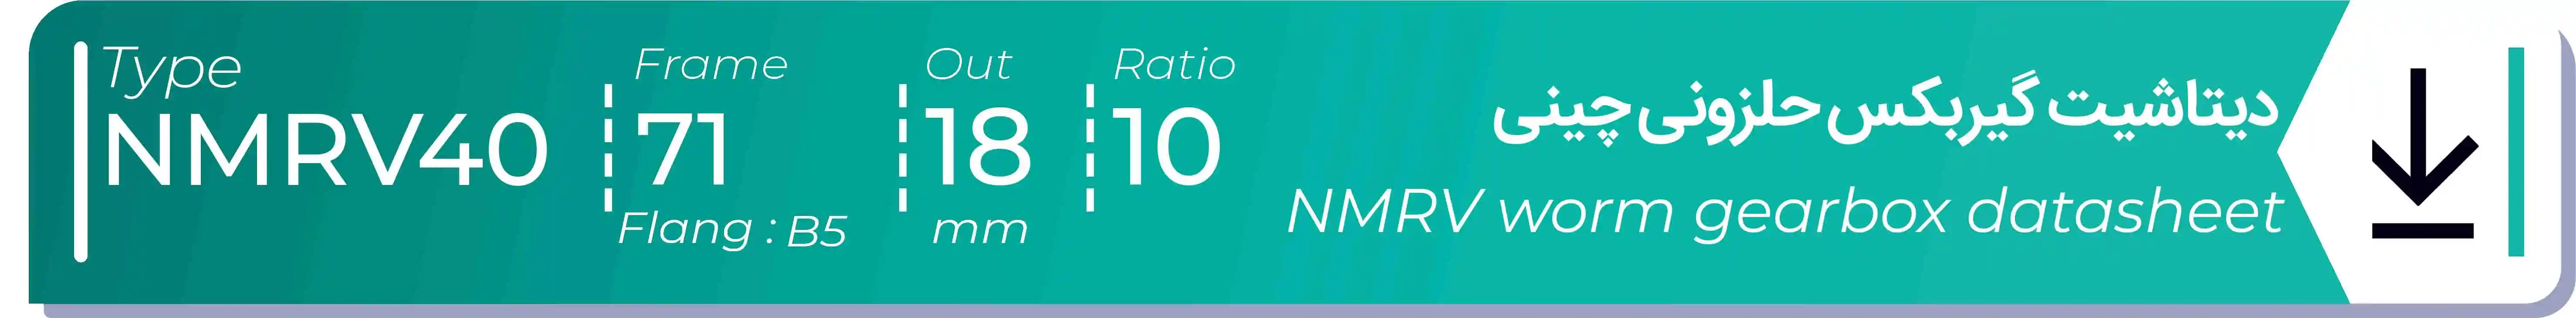  دیتاشیت و مشخصات فنی گیربکس حلزونی چینی   NMRV40  -  با خروجی 18- میلی متر و نسبت10 و فریم 71